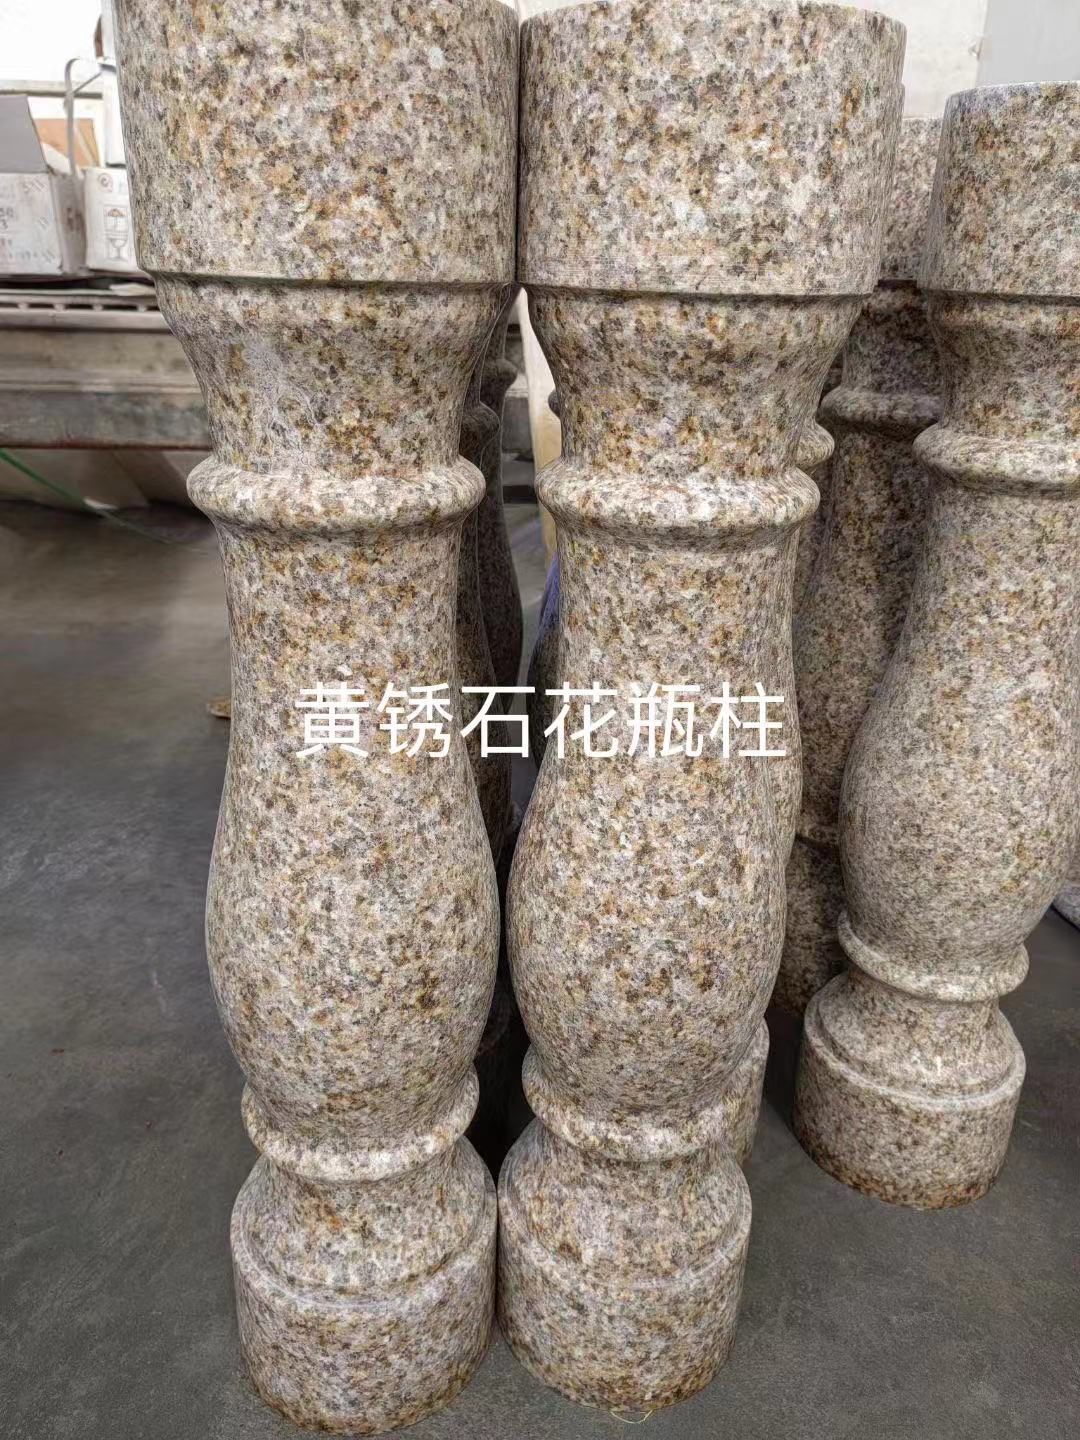 黄锈石花瓶柱多少钱  黄锈石花瓶柱厂家 黄锈石花瓶柱报价多少钱